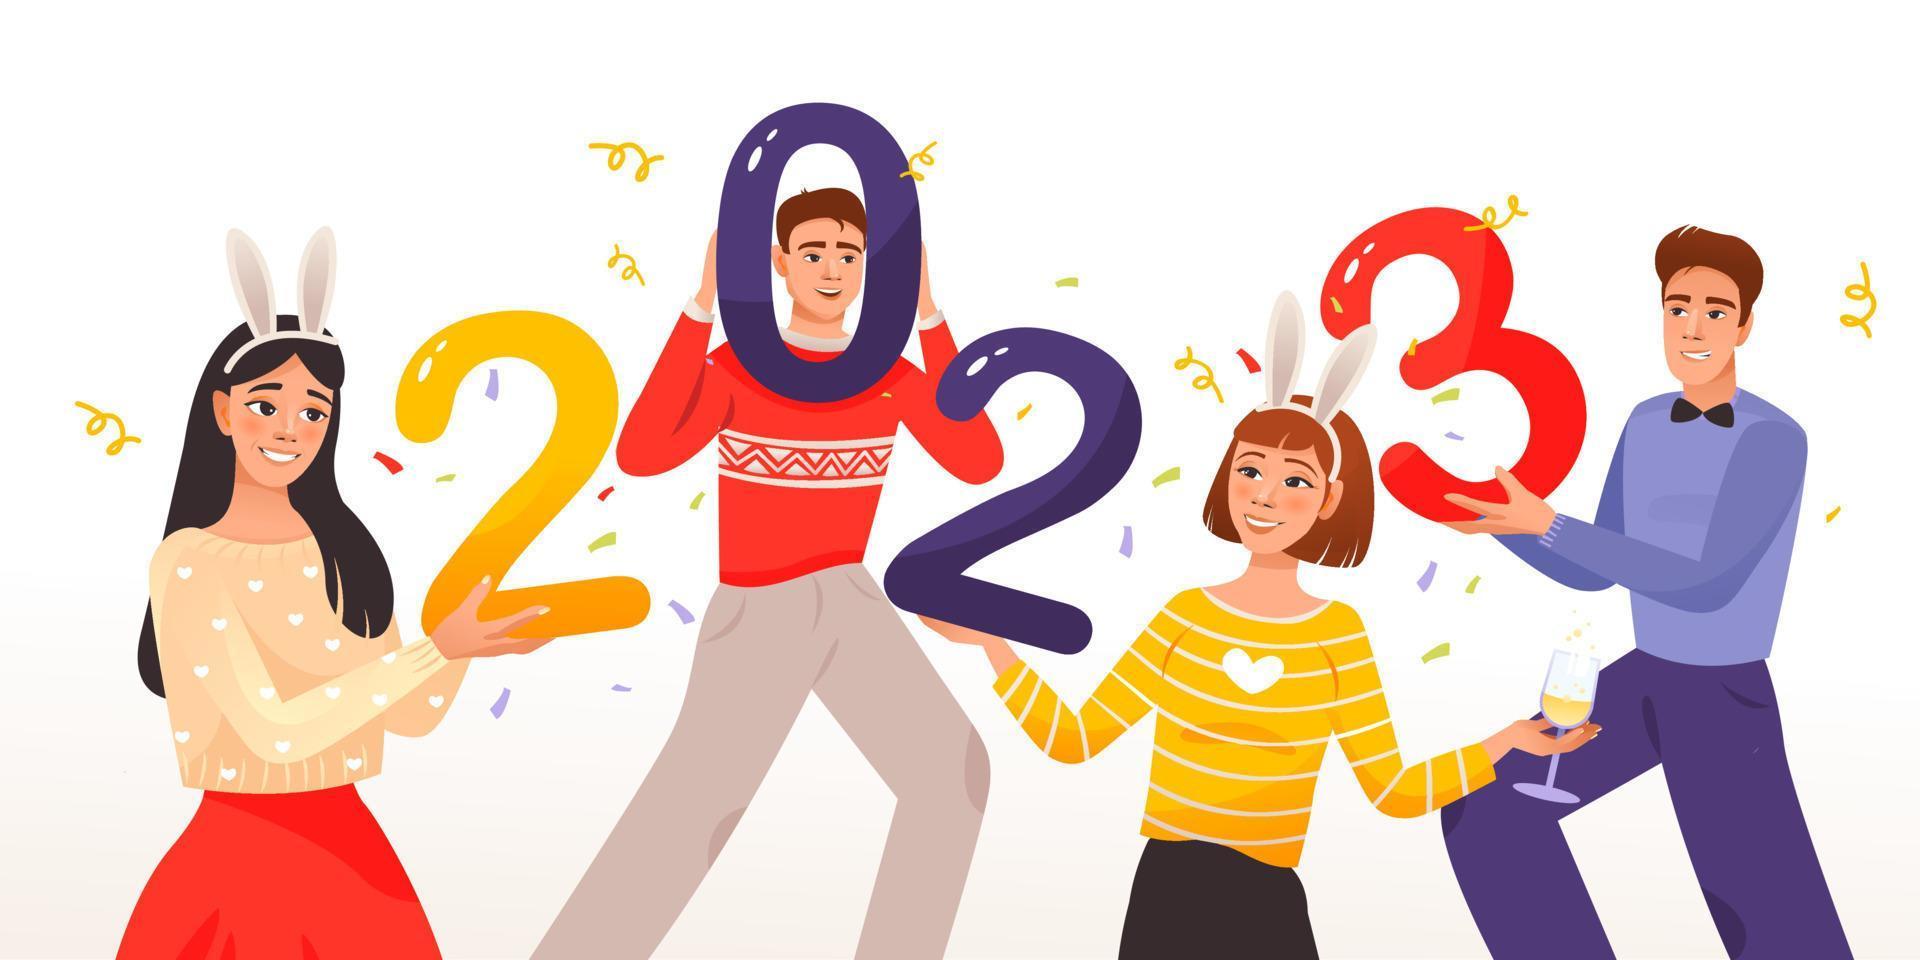 pessoas segurando os números do ano novo de 2023 nas mãos. pessoas felizes comemorando o início do ano novo. ilustração vetorial de desenho animado vetor